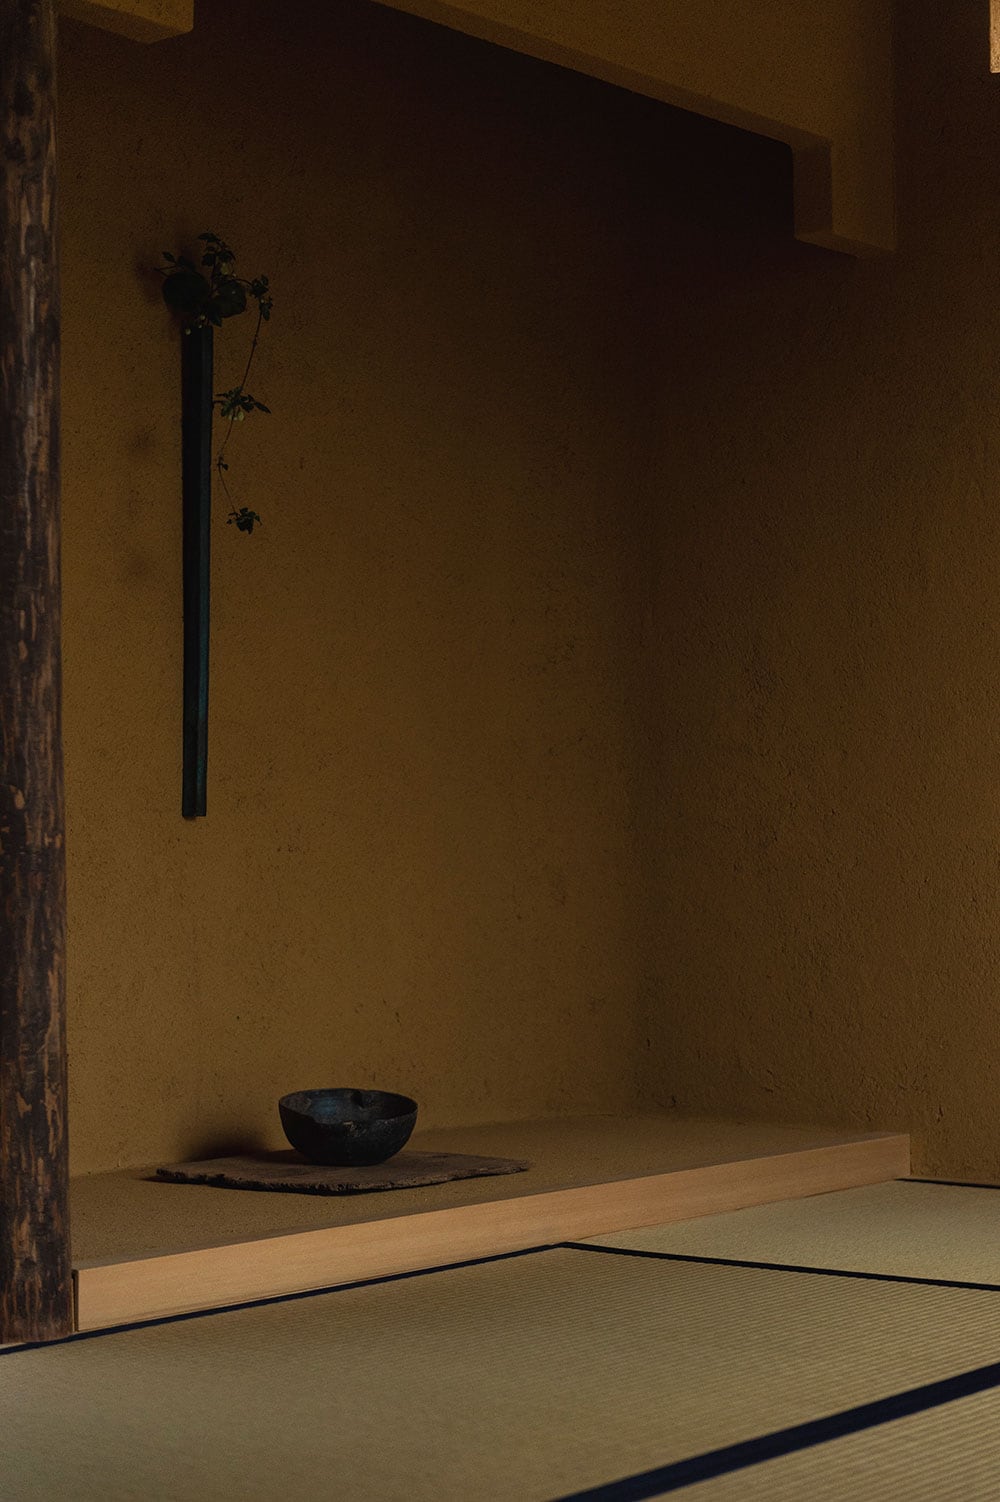 茶人・千宗屋監修の茶座敷“抱土”を擁する、“土逢 DOOU”。茶座敷には内田による花器と、李氏朝鮮時代の貴重な片口の器が配されている。